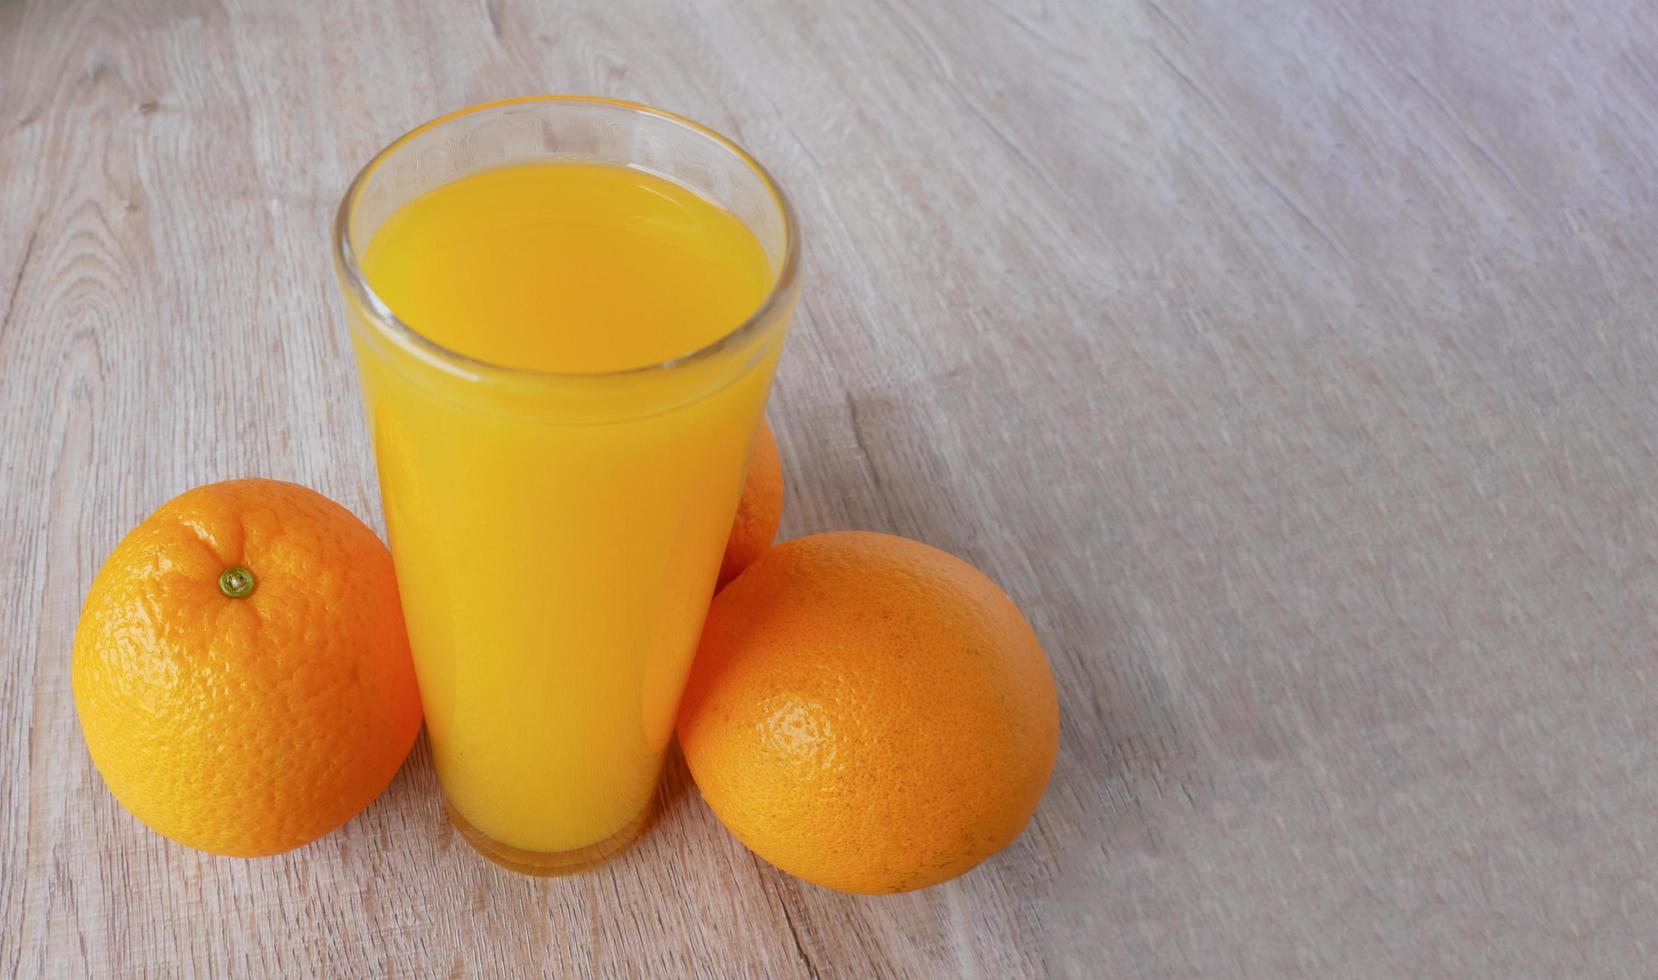 Vaso de jugo de naranja y naranjas sobre un piso de madera foto